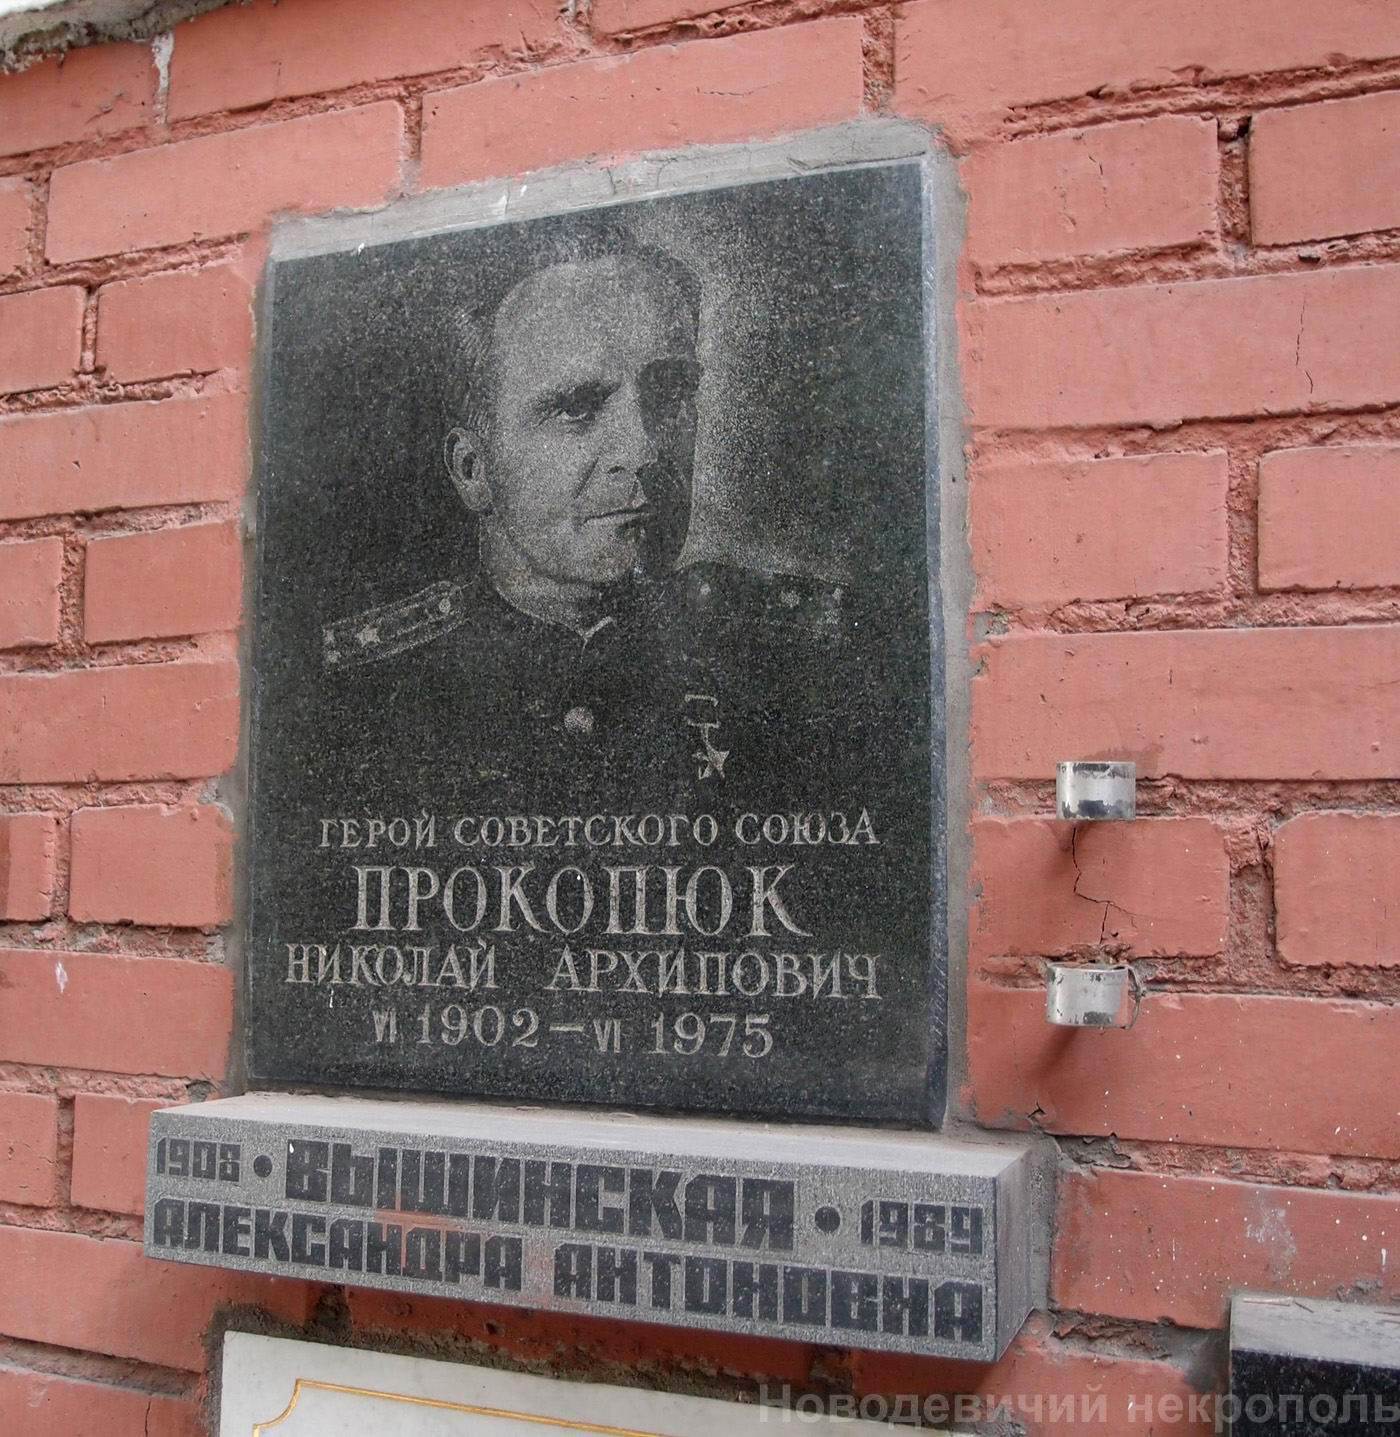 Плита на нише Прокопюка Н.А. (1902-1975), на Новодевичьем кладбище (колумбарий [130]-32-1).